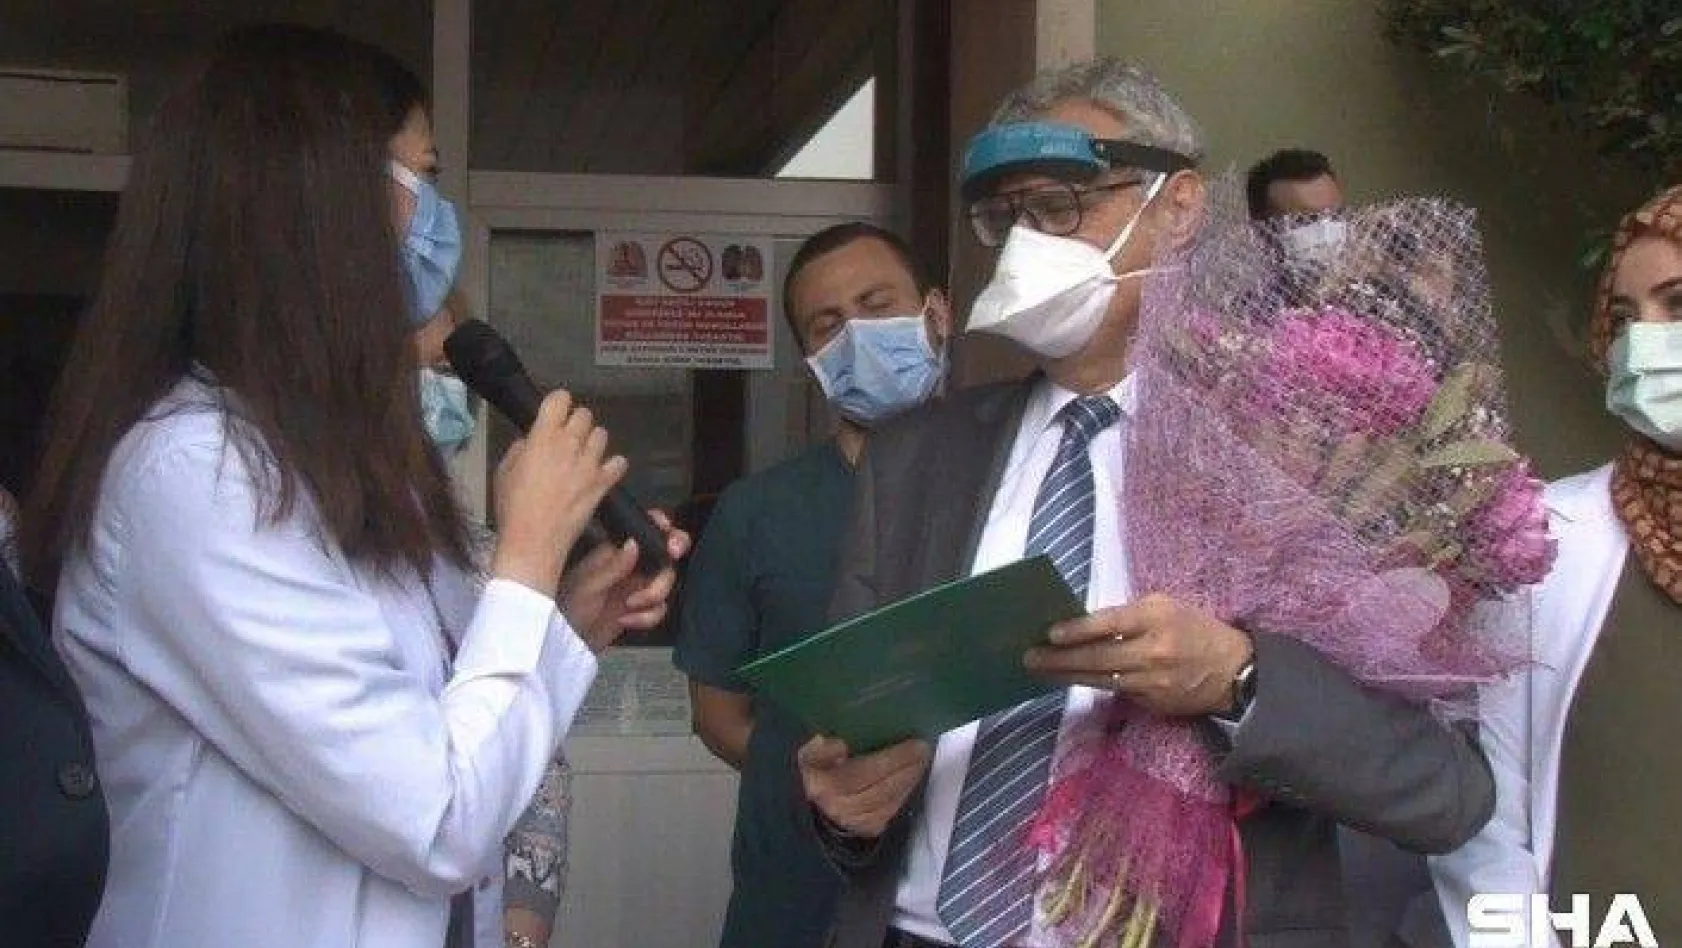 İstanbul Tıp Fakültesi öğrencilerinden hocalarına anlamlı sürpriz